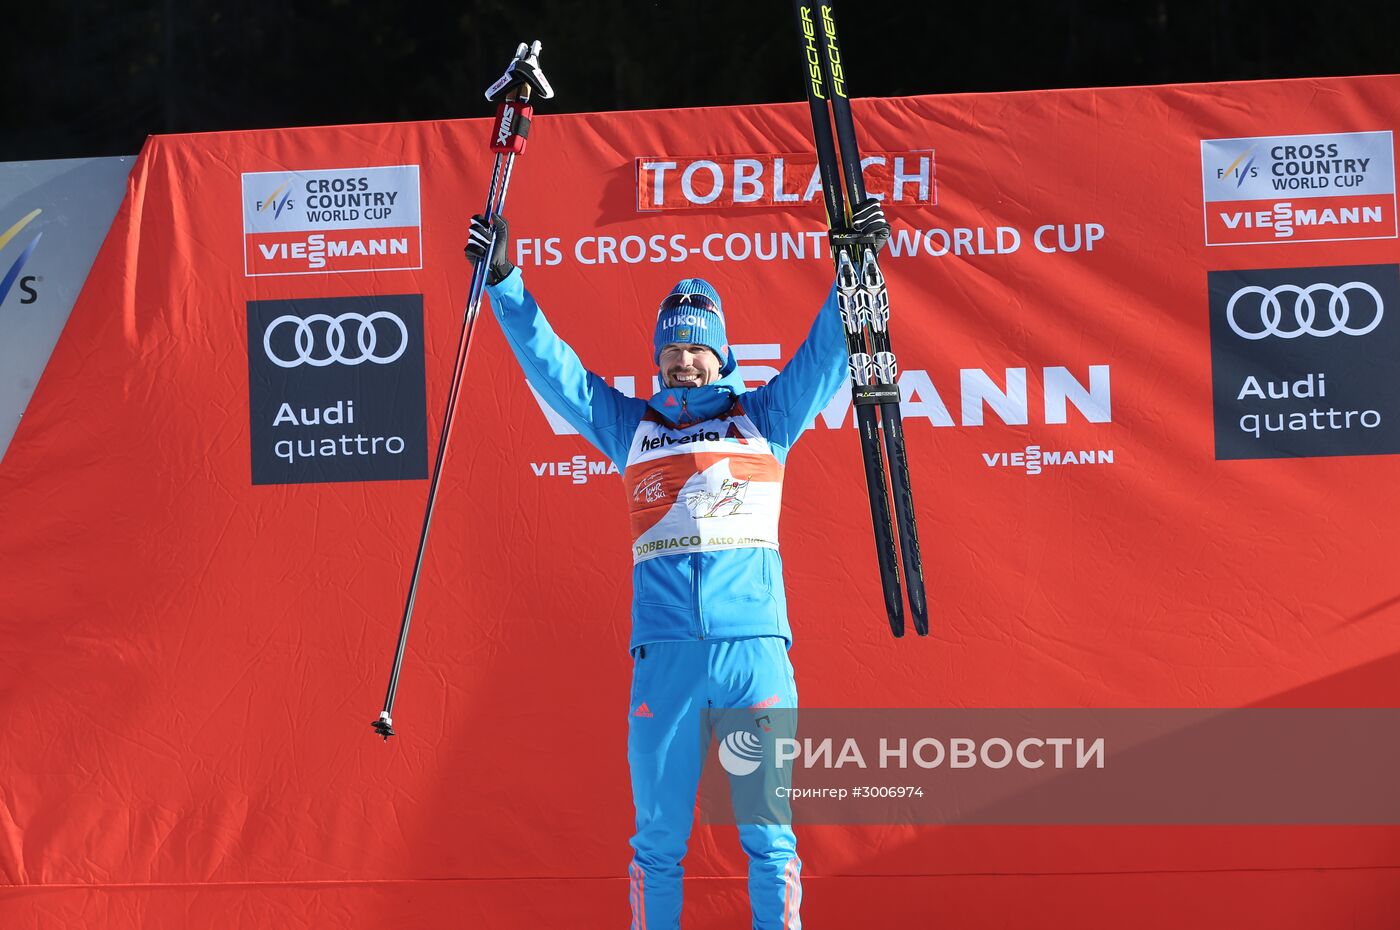 Сергей Устюгов одержал пять побед подряд на "Тур де Ски"